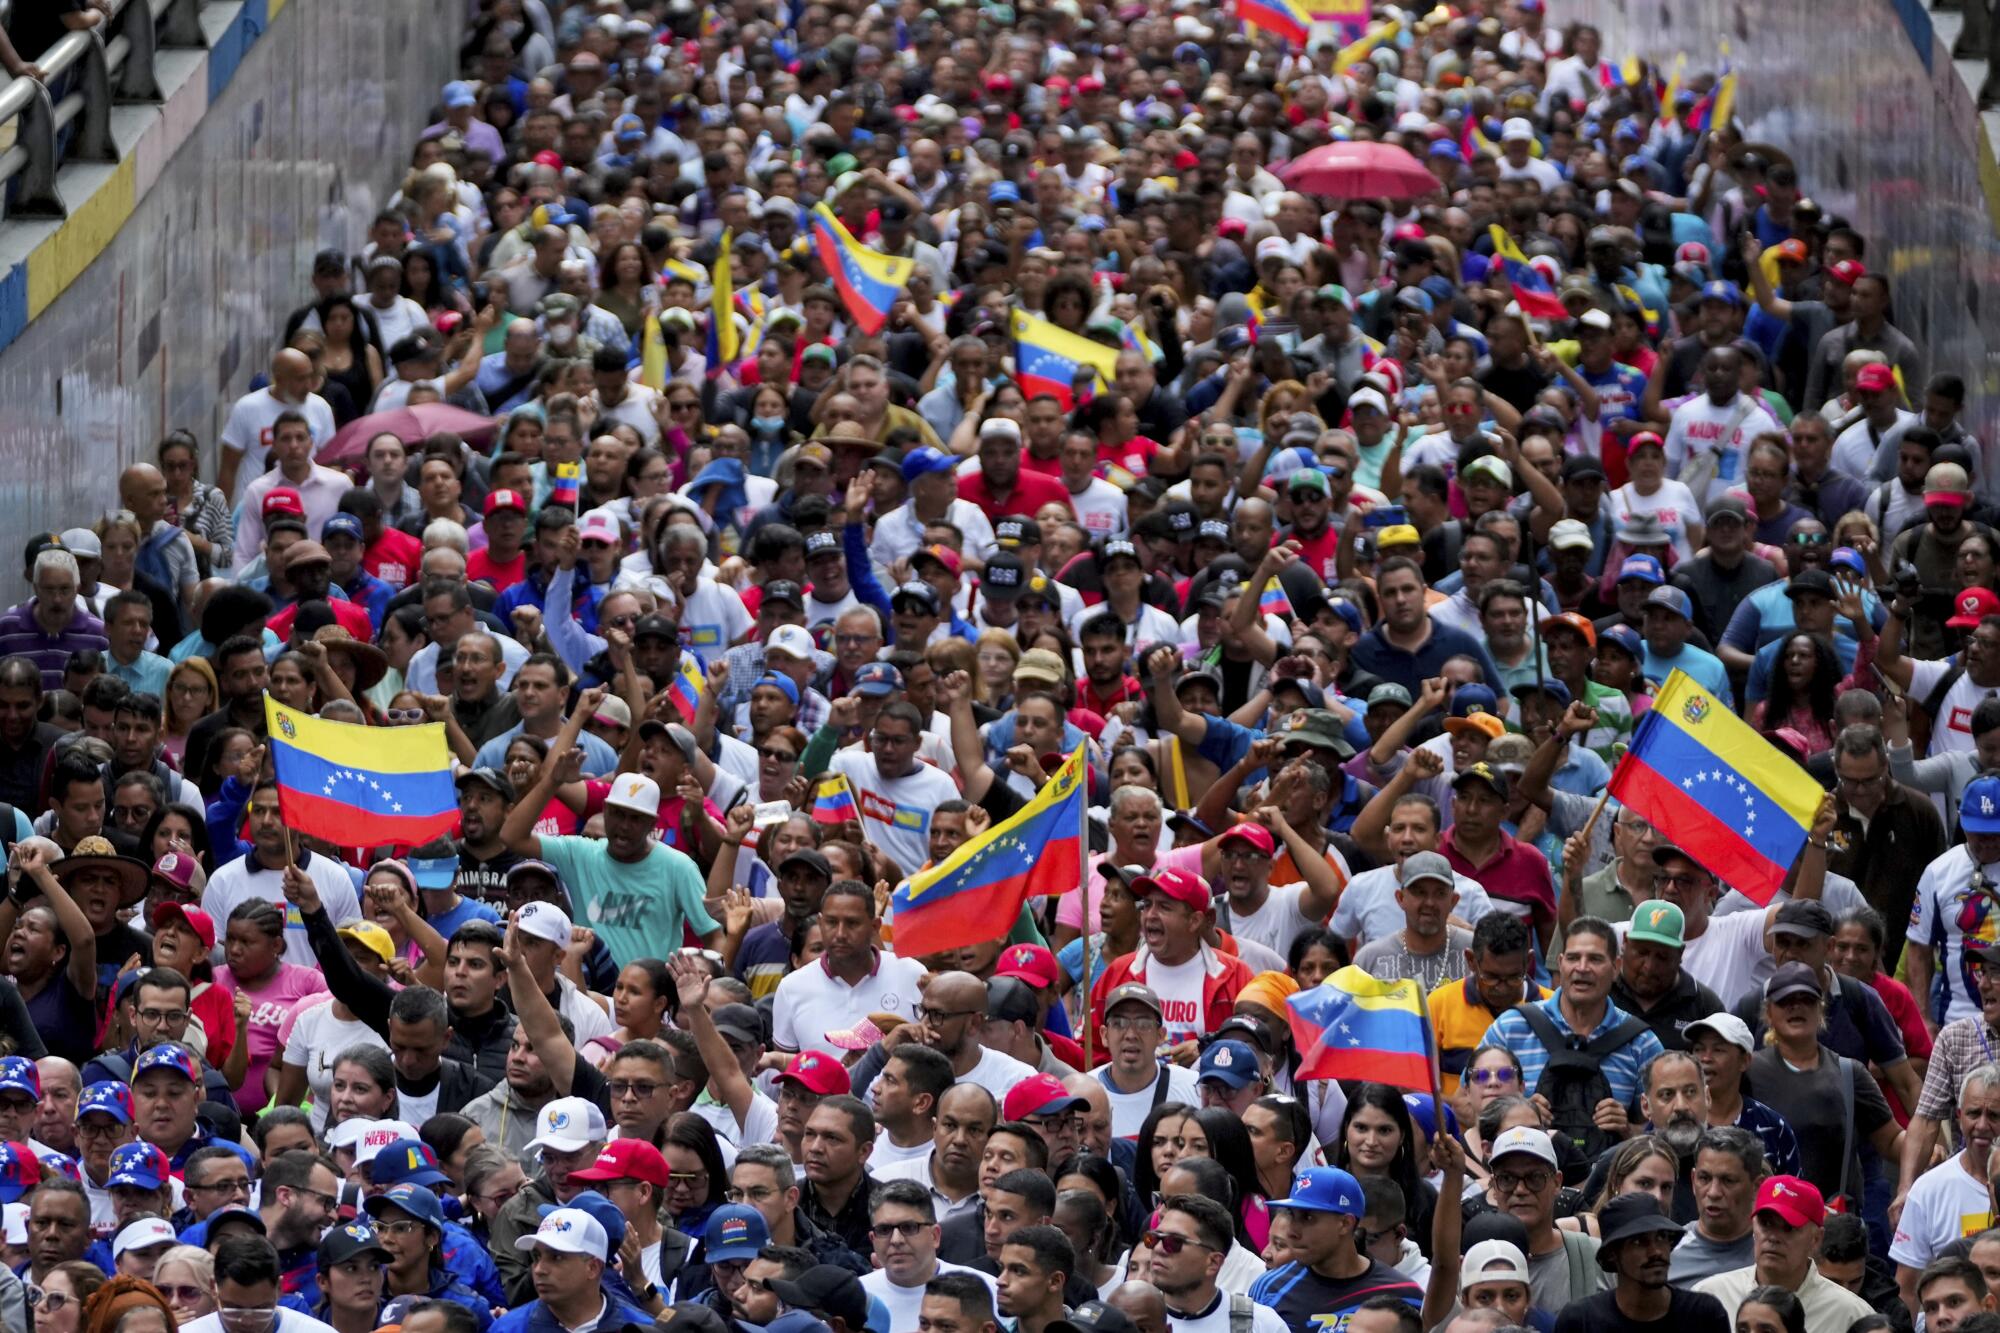 El clamor de millones de venezolanos es apoyado por muchos de los artistas internacionales